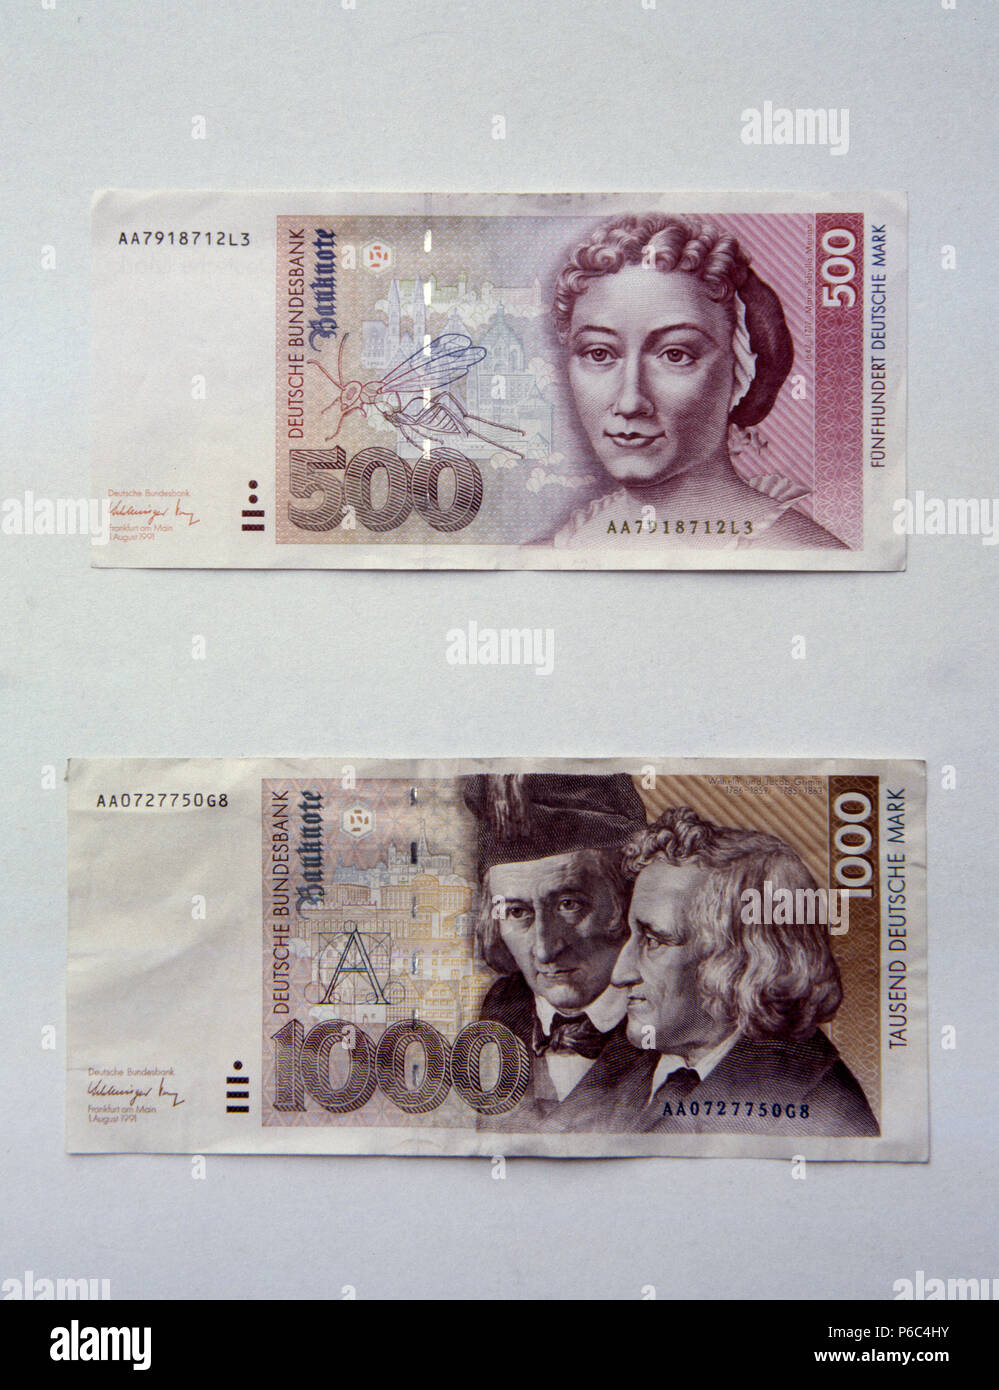 Berlino, Germania - banconote per un valore di 500 DM e 1000 DM Foto Stock